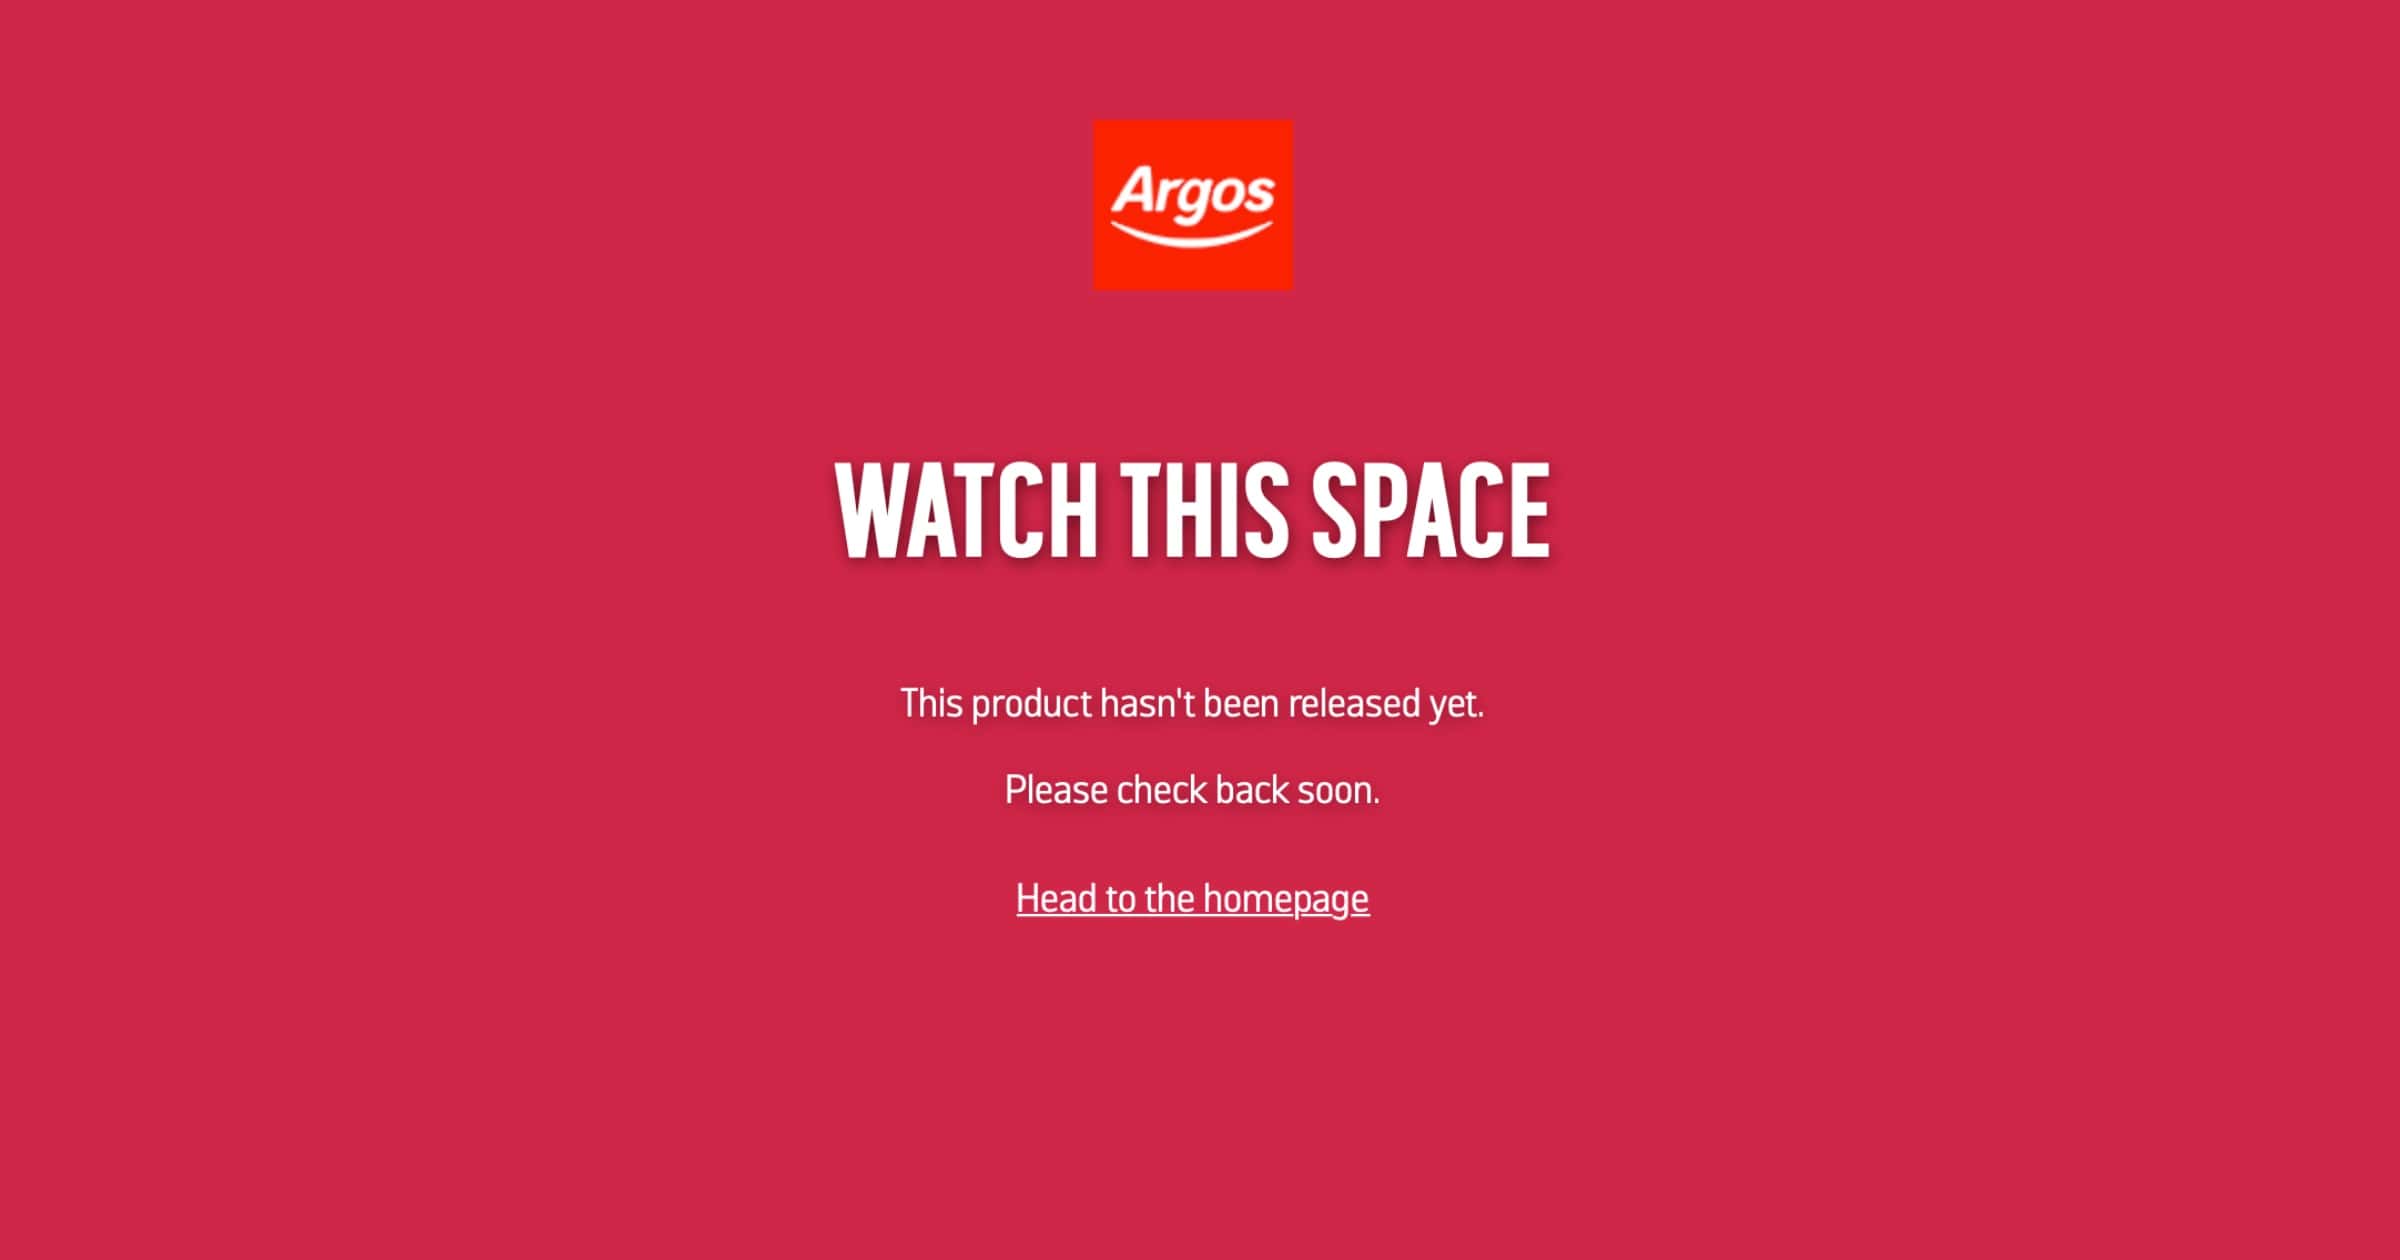 Argos Apple TV 4K not available